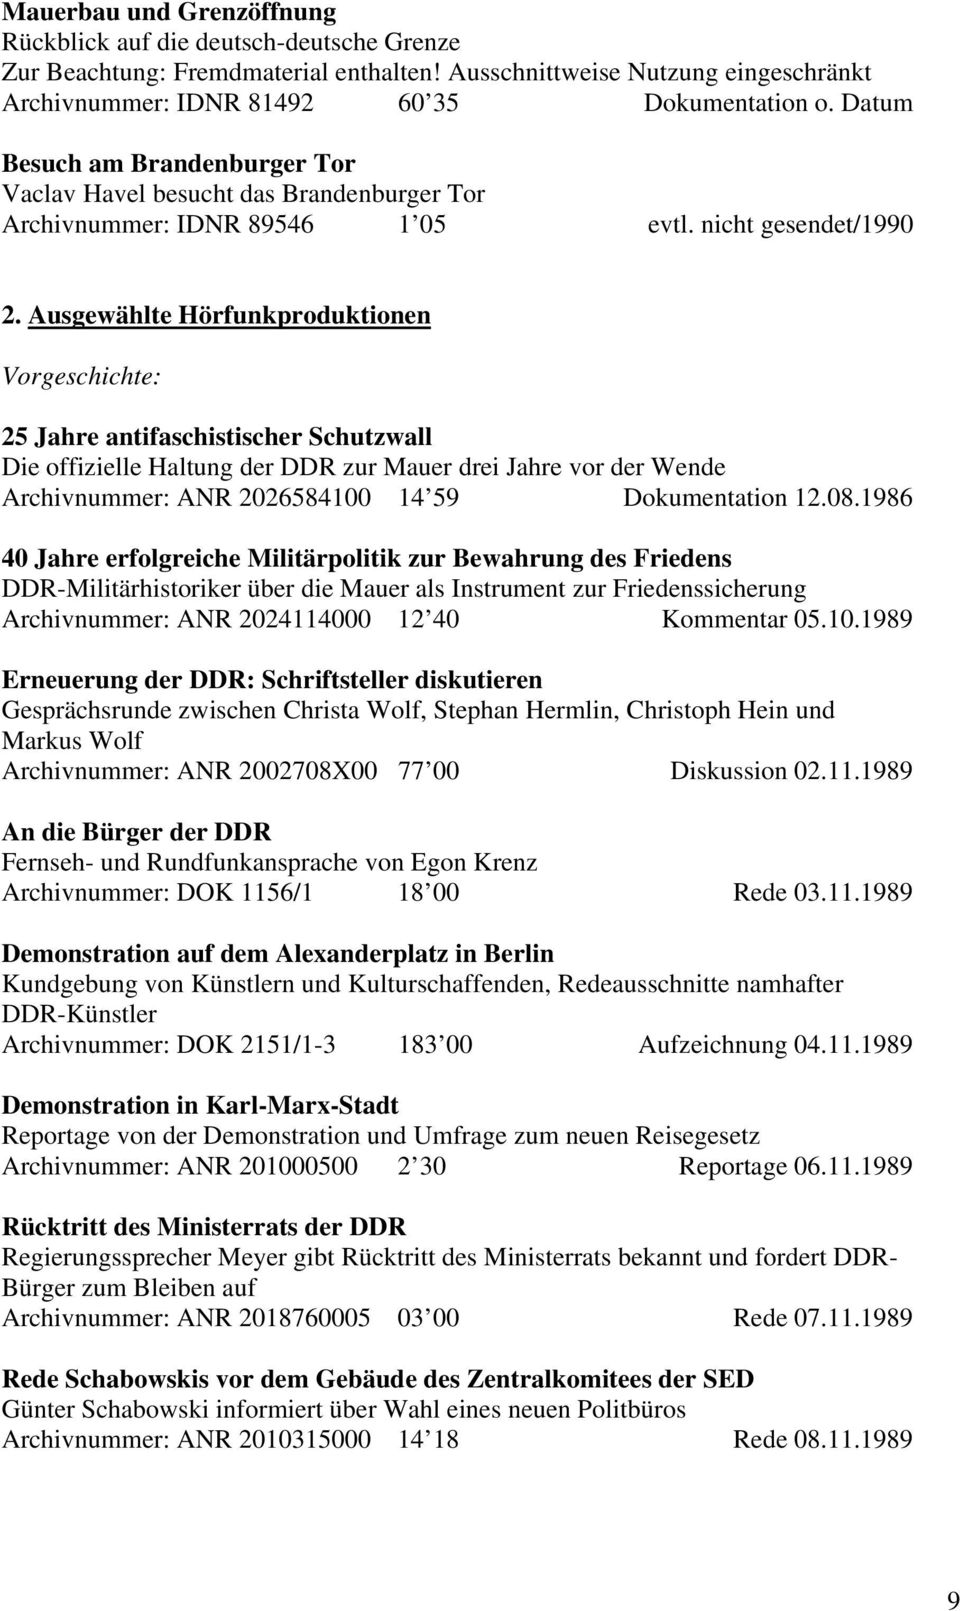 Ausgewählte Hörfunkproduktionen Vorgeschichte: 25 Jahre antifaschistischer Schutzwall Die offizielle Haltung der DDR zur Mauer drei Jahre vor der Wende Archivnummer: ANR 2026584100 14 59